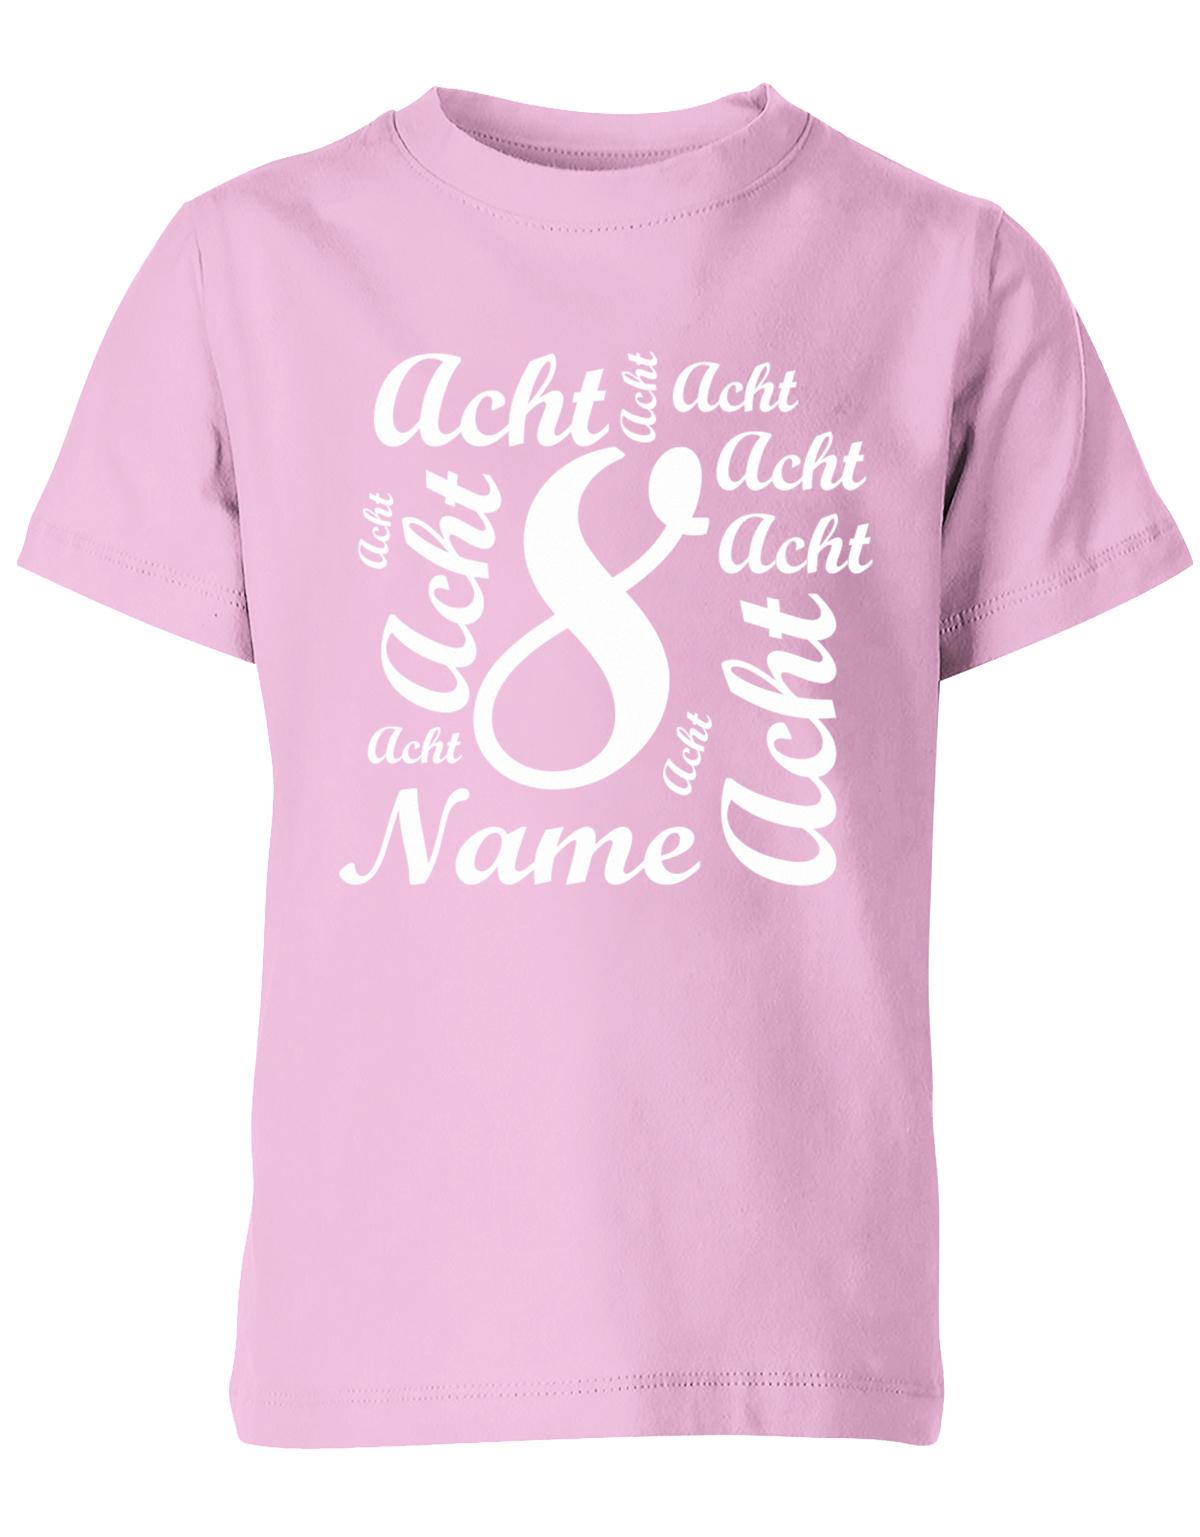 ich-bin-8-viele-achten-mit-name-geburtstag-kinder-shirt-rosa